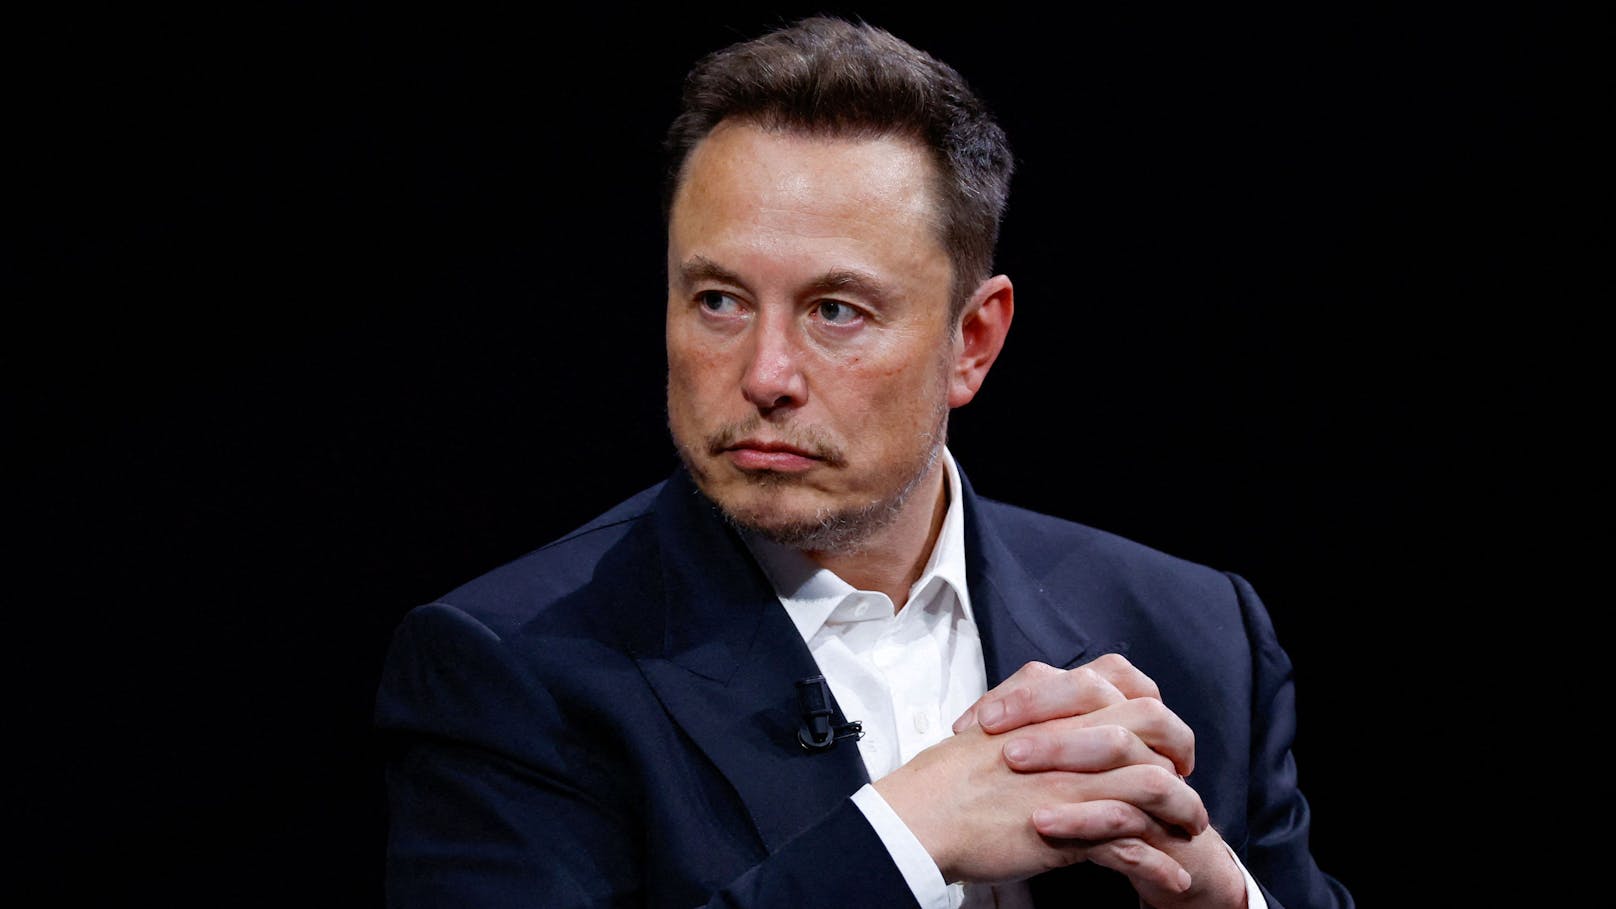 "Go f*** yourself" – Elon Musk beschimpft Werbekunden